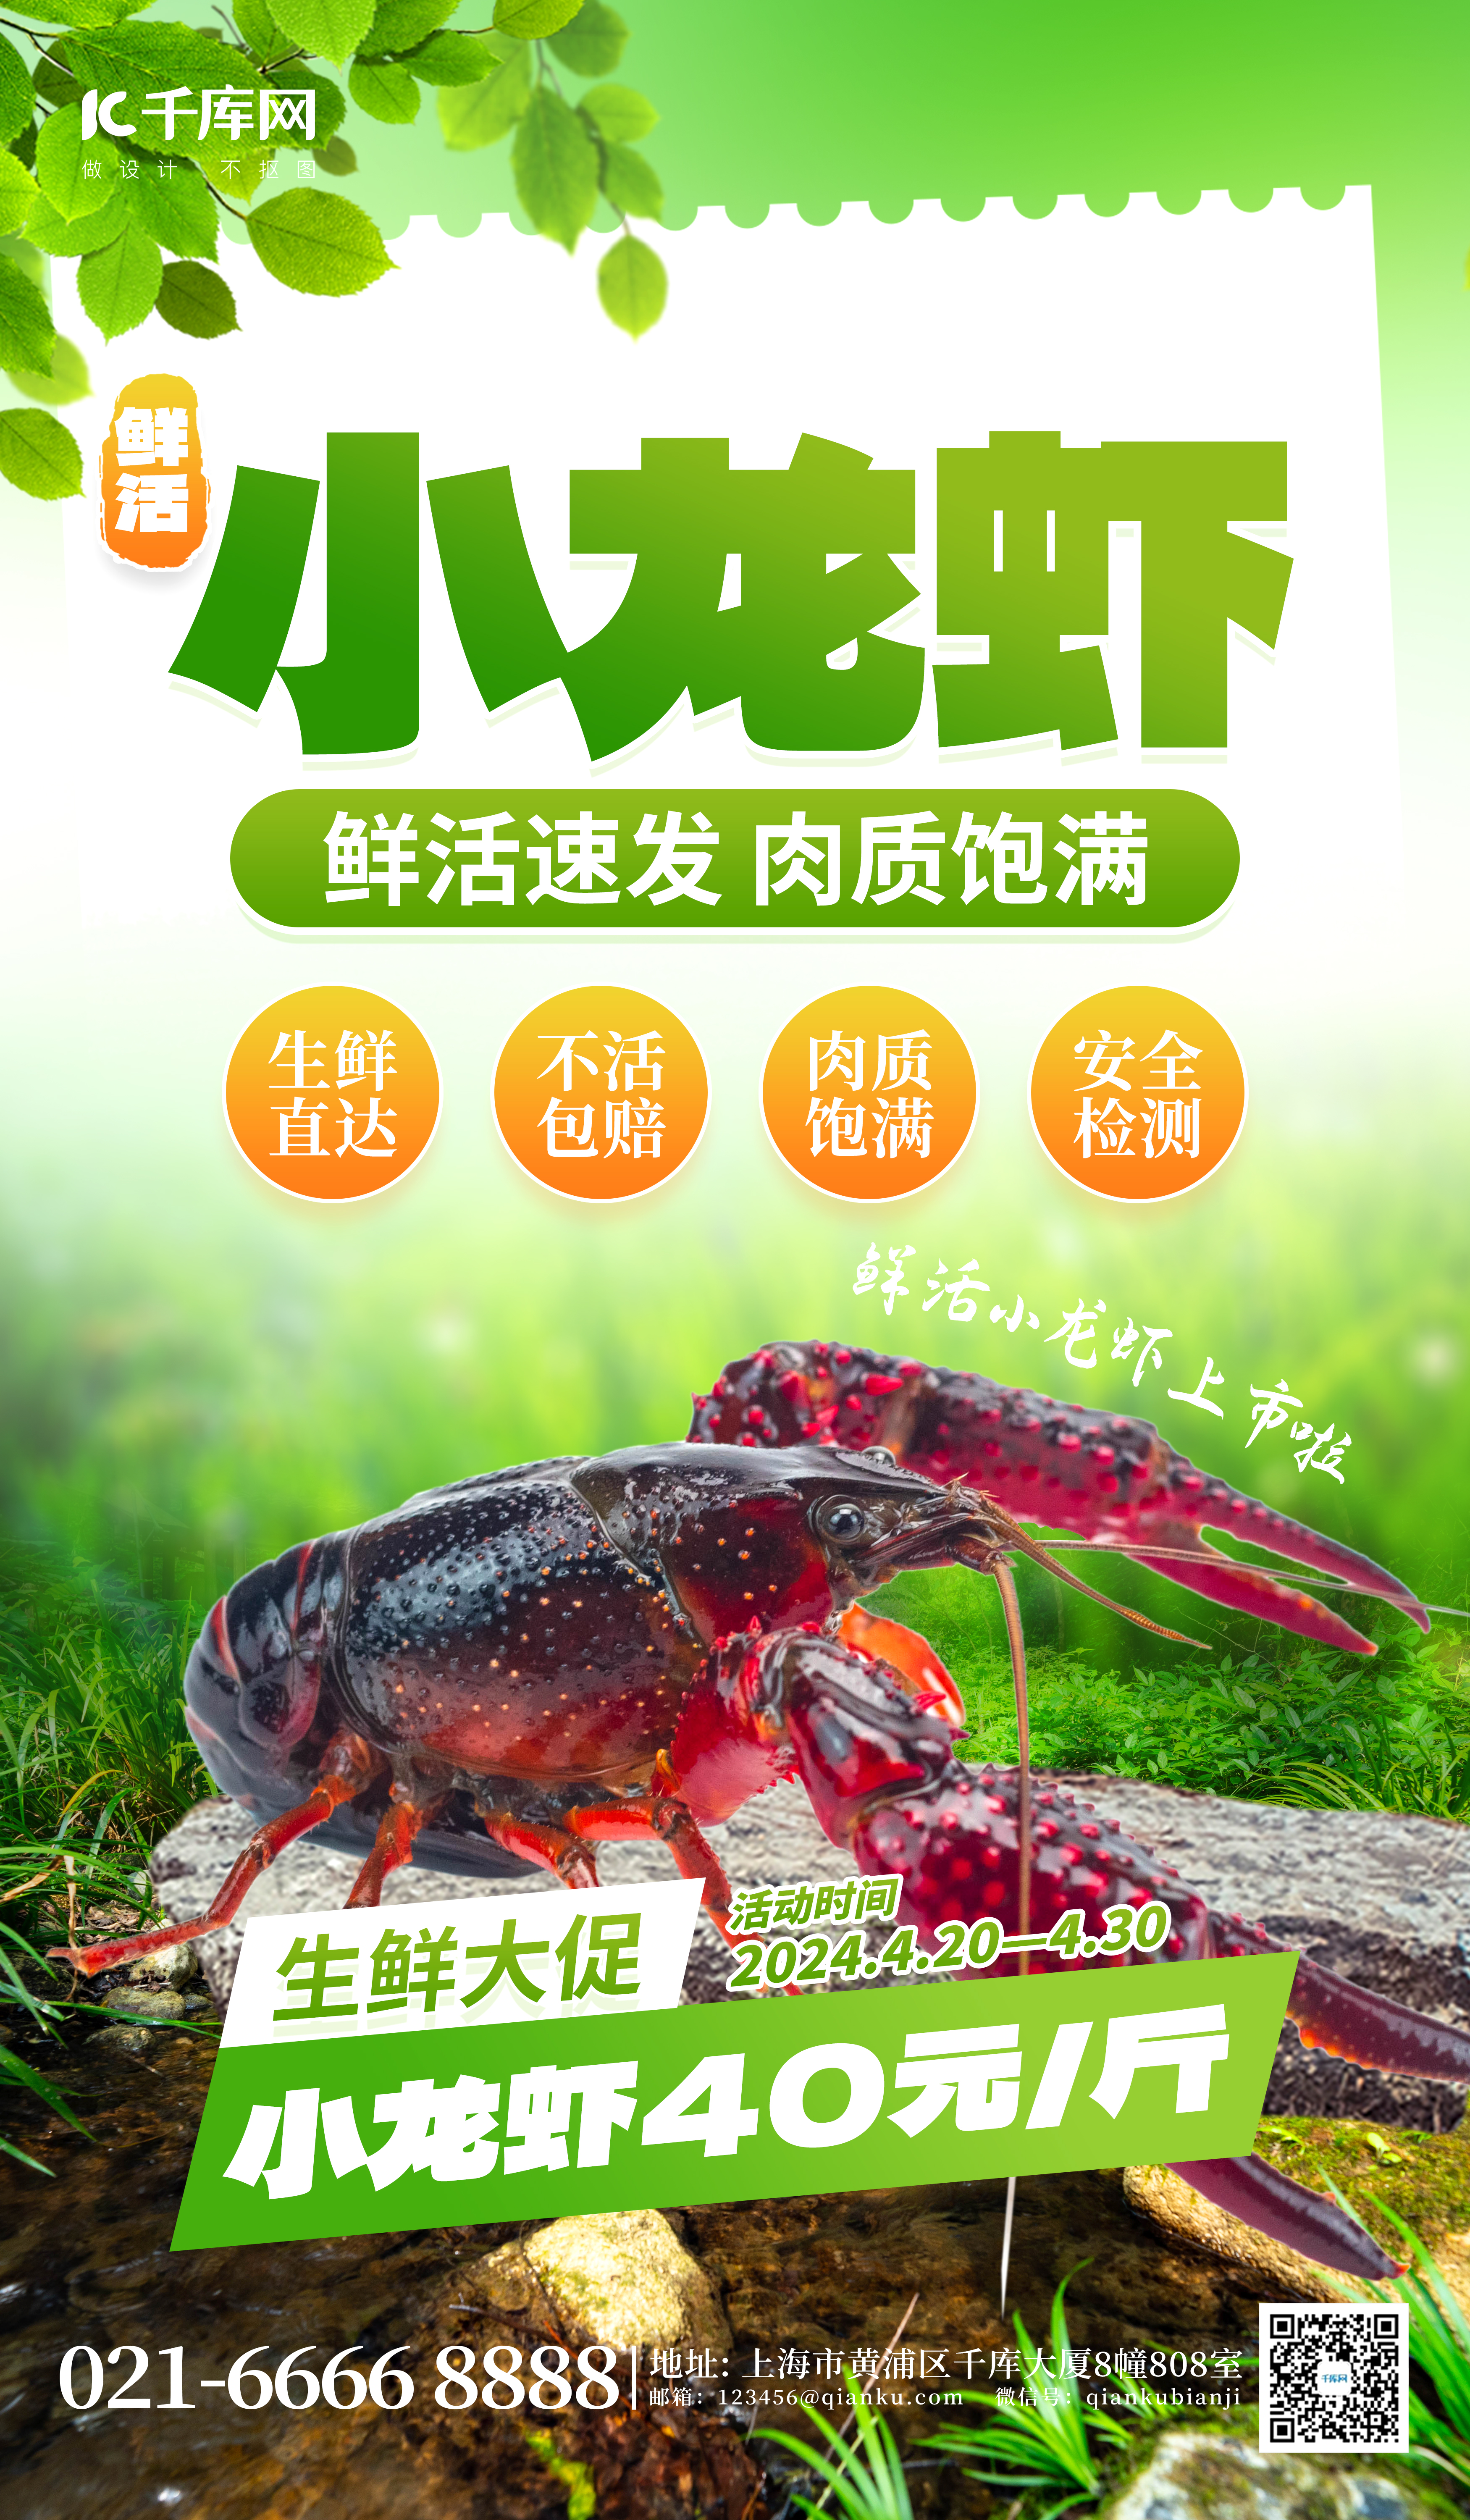 鲜活小龙虾生鲜促销绿色创意海报图片